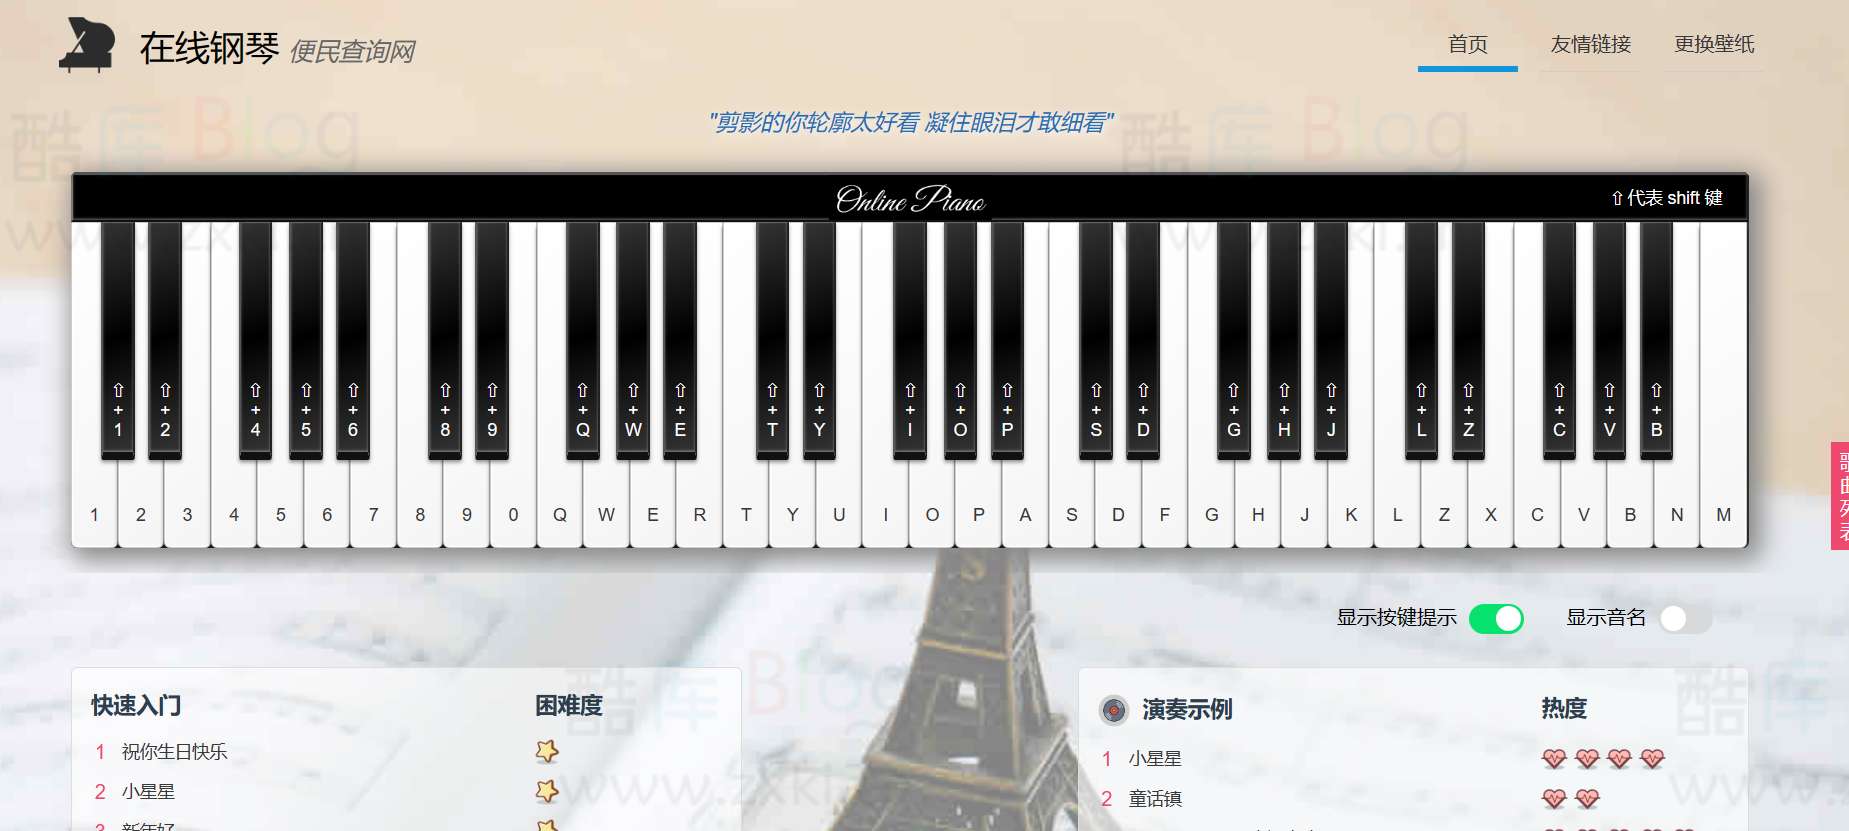 AutoPiano-在线弹钢琴模拟器网站源码-心动次元